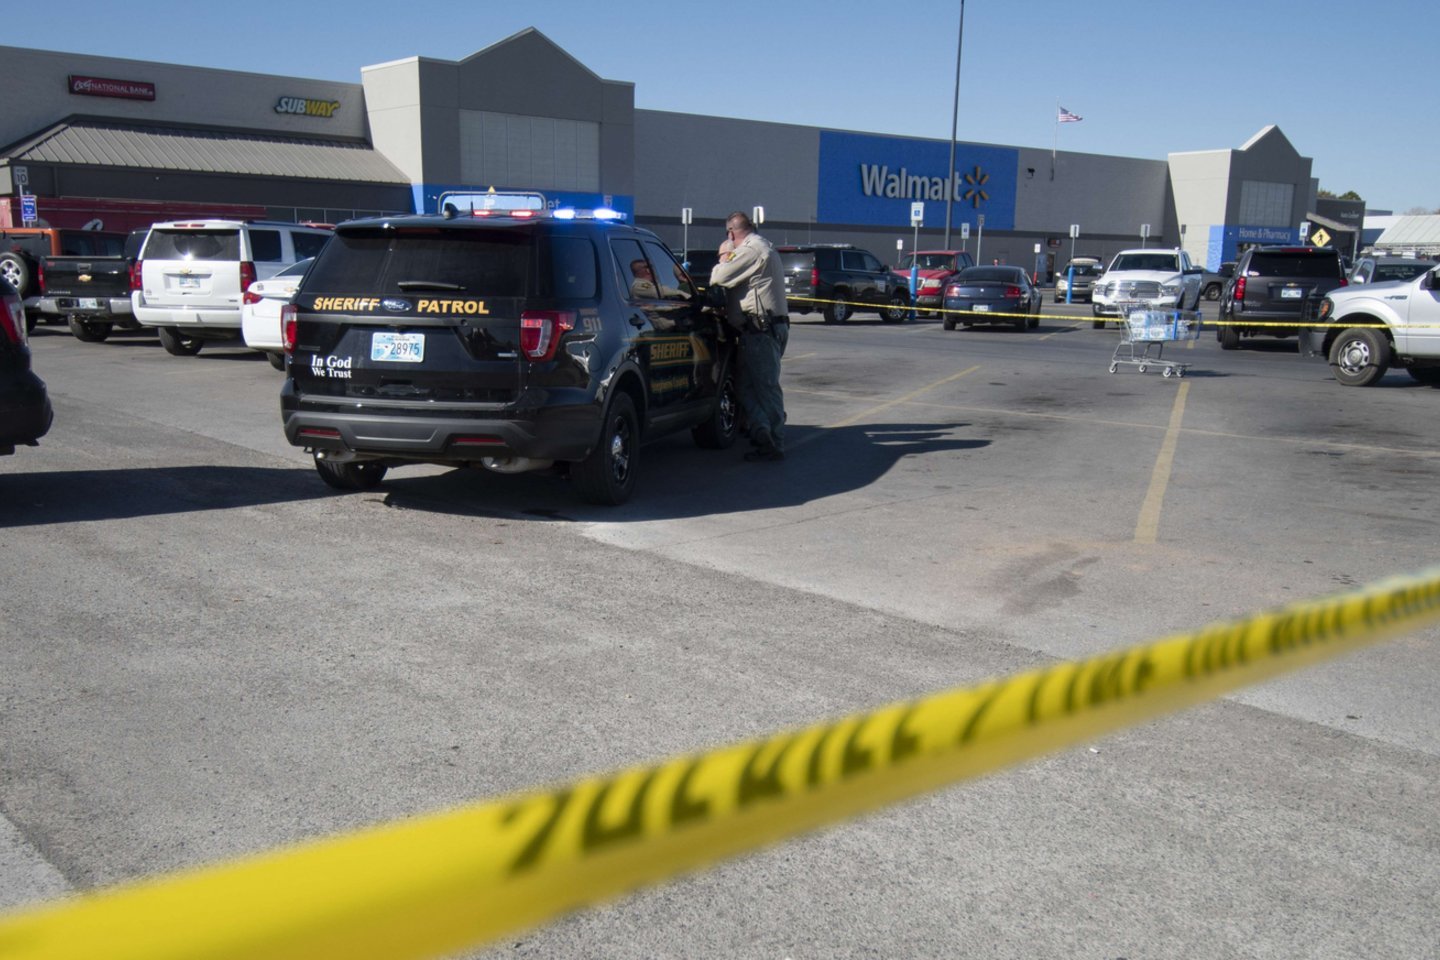 Pirmadienį pranešta apie kruvinas šaudynes prie prekybos tinklo „Walmart“ parduotuvės, Dankano mieste, JAV Oklahomos valstijoje. <br>AFP/Scanpix nuotr.